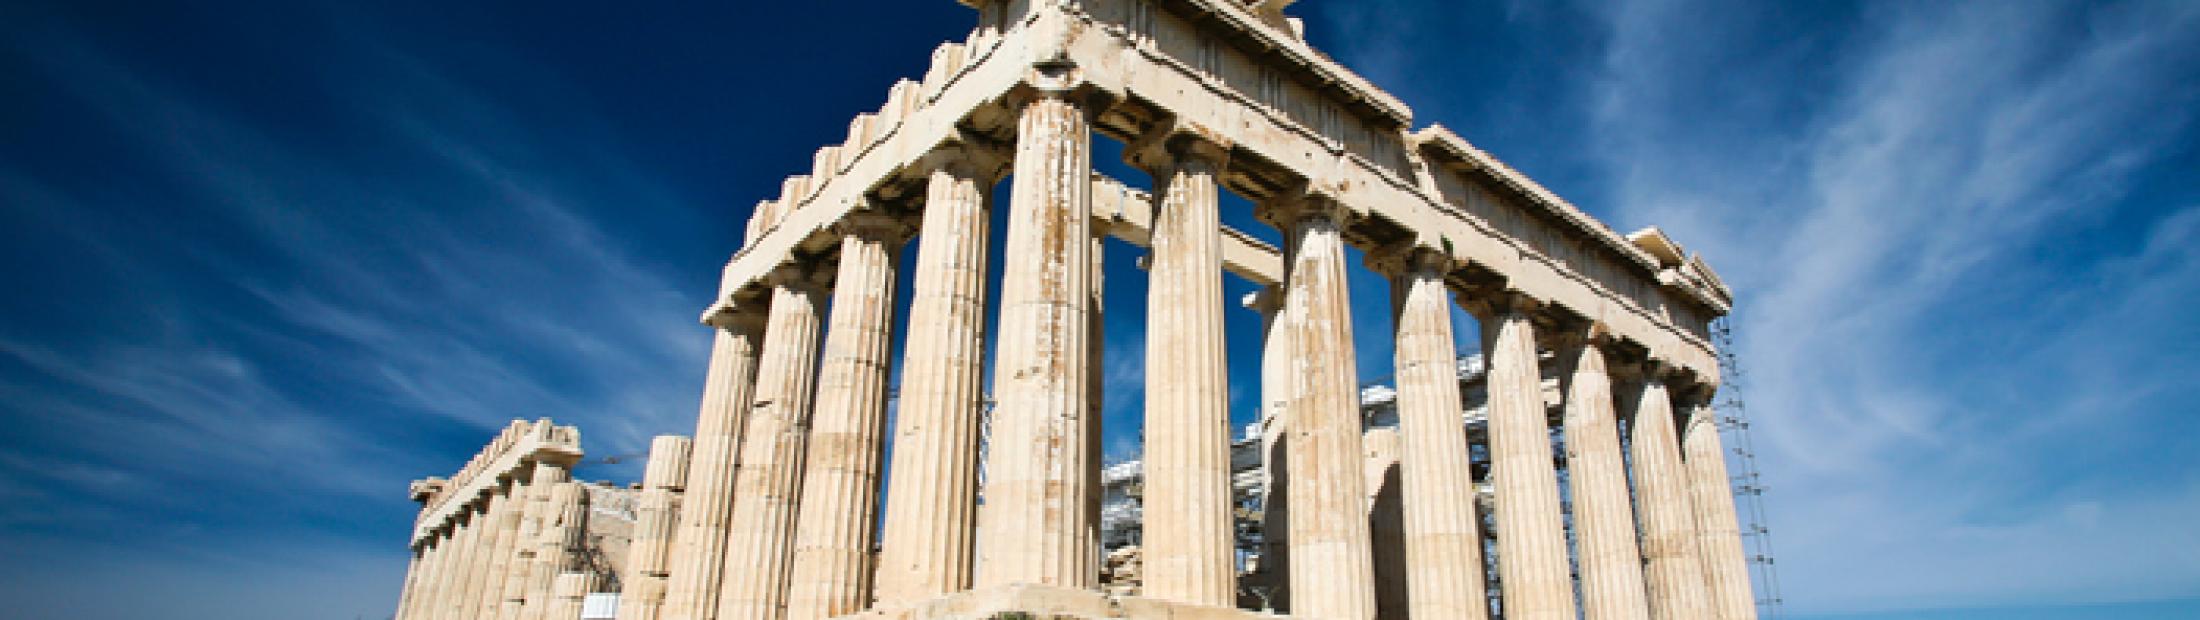 La Acrópolis de Atenas recibe a unos visitantes muy especiales